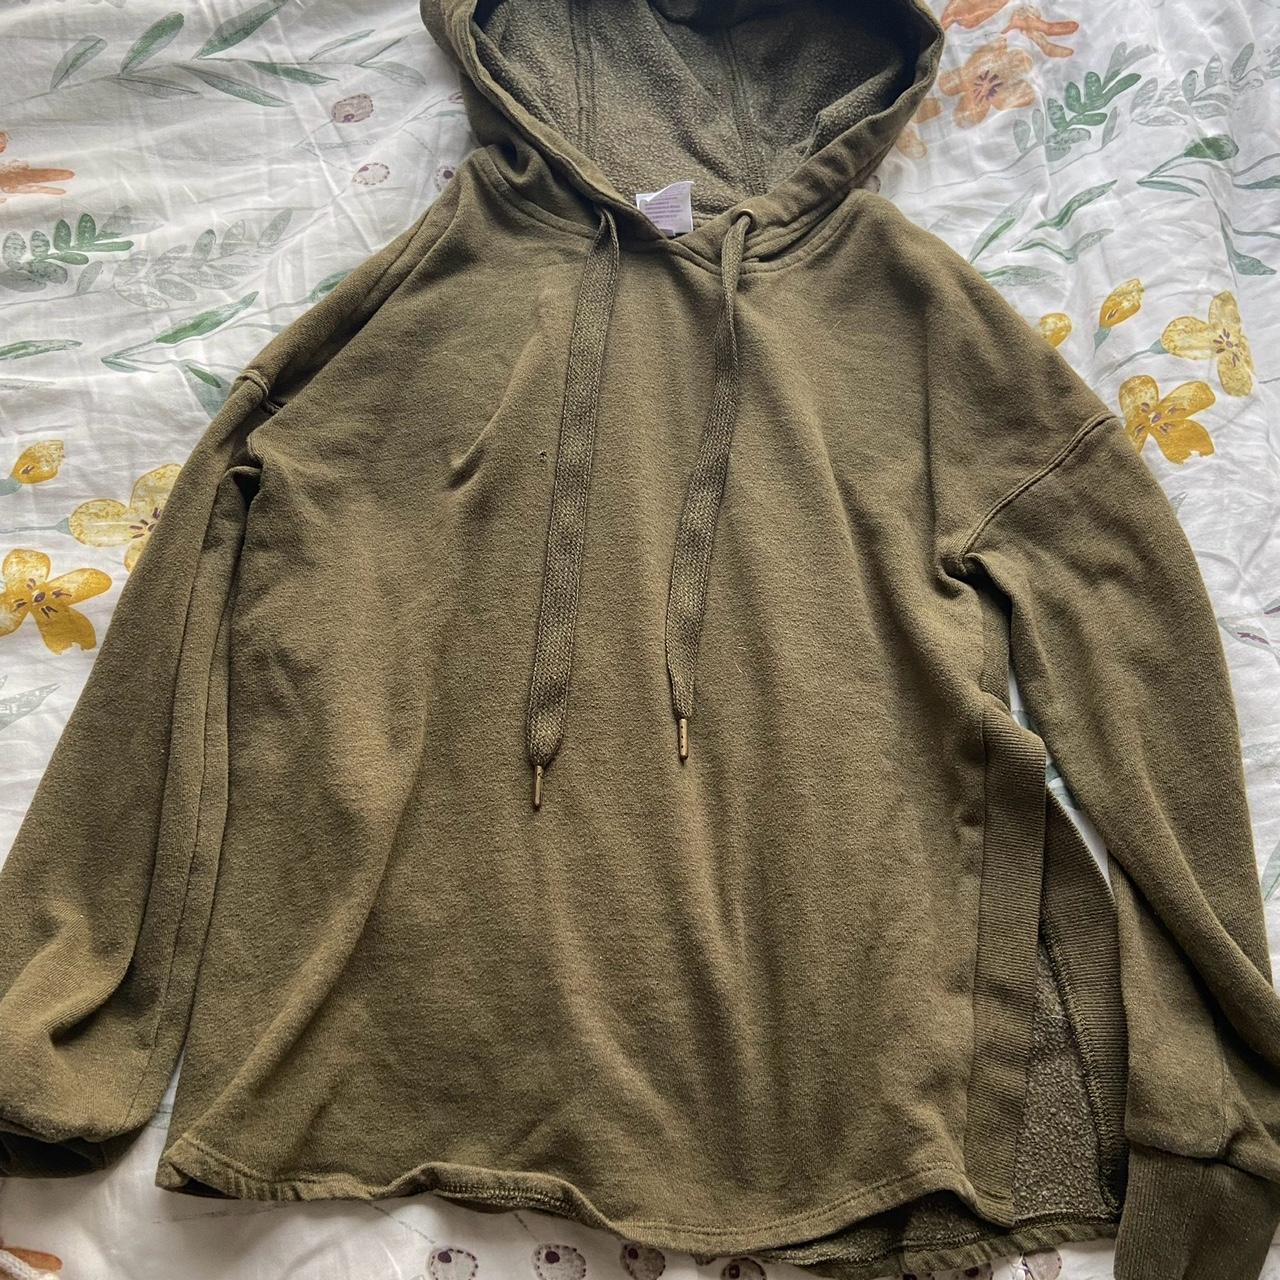 Vintage olive green hoodie ACCEPTING ALL... - Depop